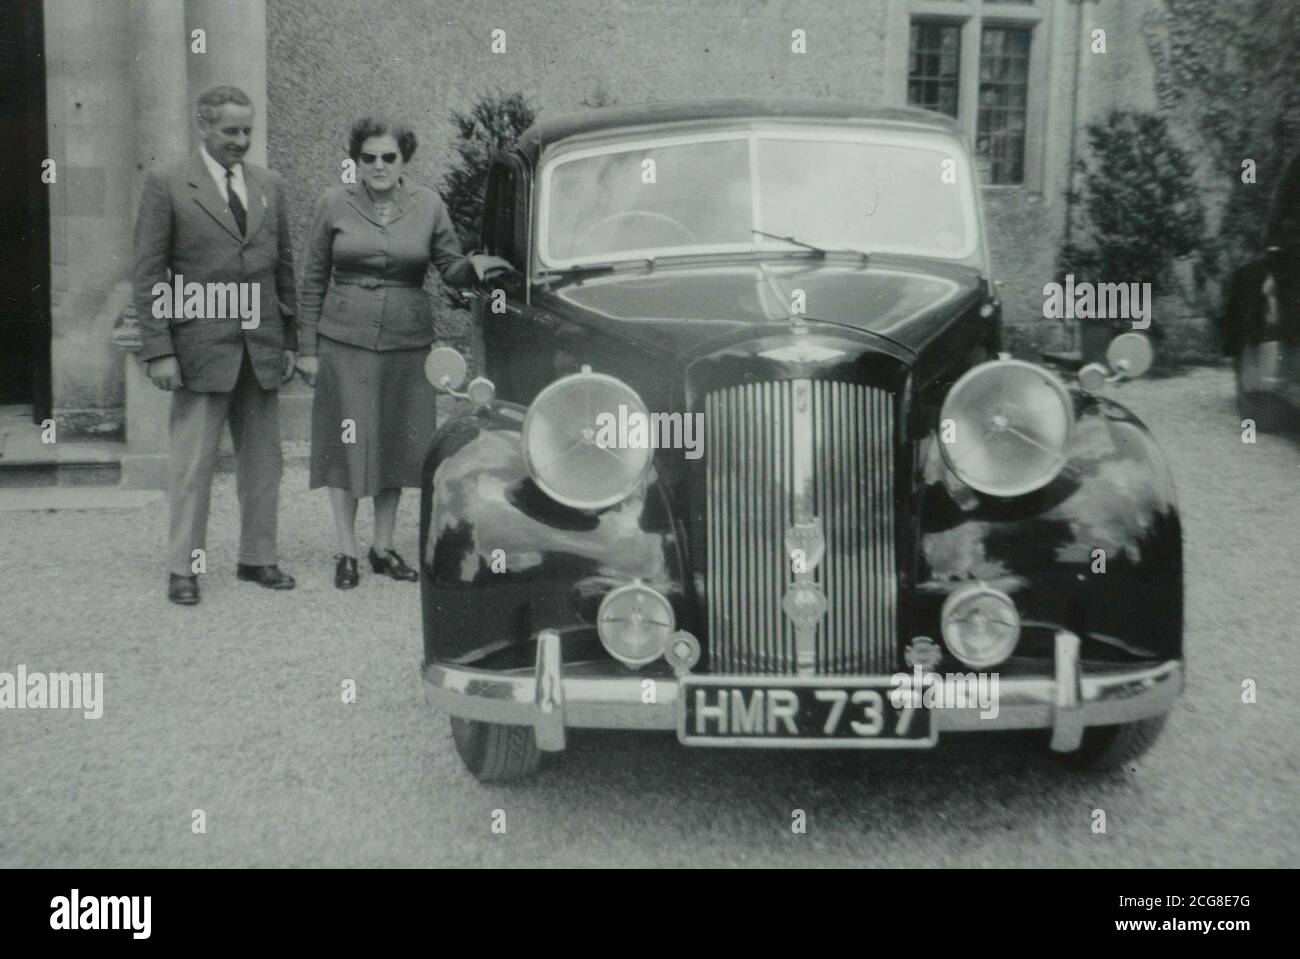 Sammeln Sie Foto um 1955, von Joseph und Sybil Atwell neben ihrer 1951 Austin Sheerline A125. Josephs Sohn Richard Atwell, 65, aus Calne, Wiltshire, hat die Austin Sheerline A125 zurückgekauft, nachdem ihr Vater sie vor fast vierzig Jahren verkauft hatte. Autobegeisterter und Museumskurator Richard Atwell hat das seltene britische Auto aufgespürt und war erstaunt, dass es nach dem Verkauf durch seinen Vater im Jahr 1965 noch unterwegs war. Stockfoto